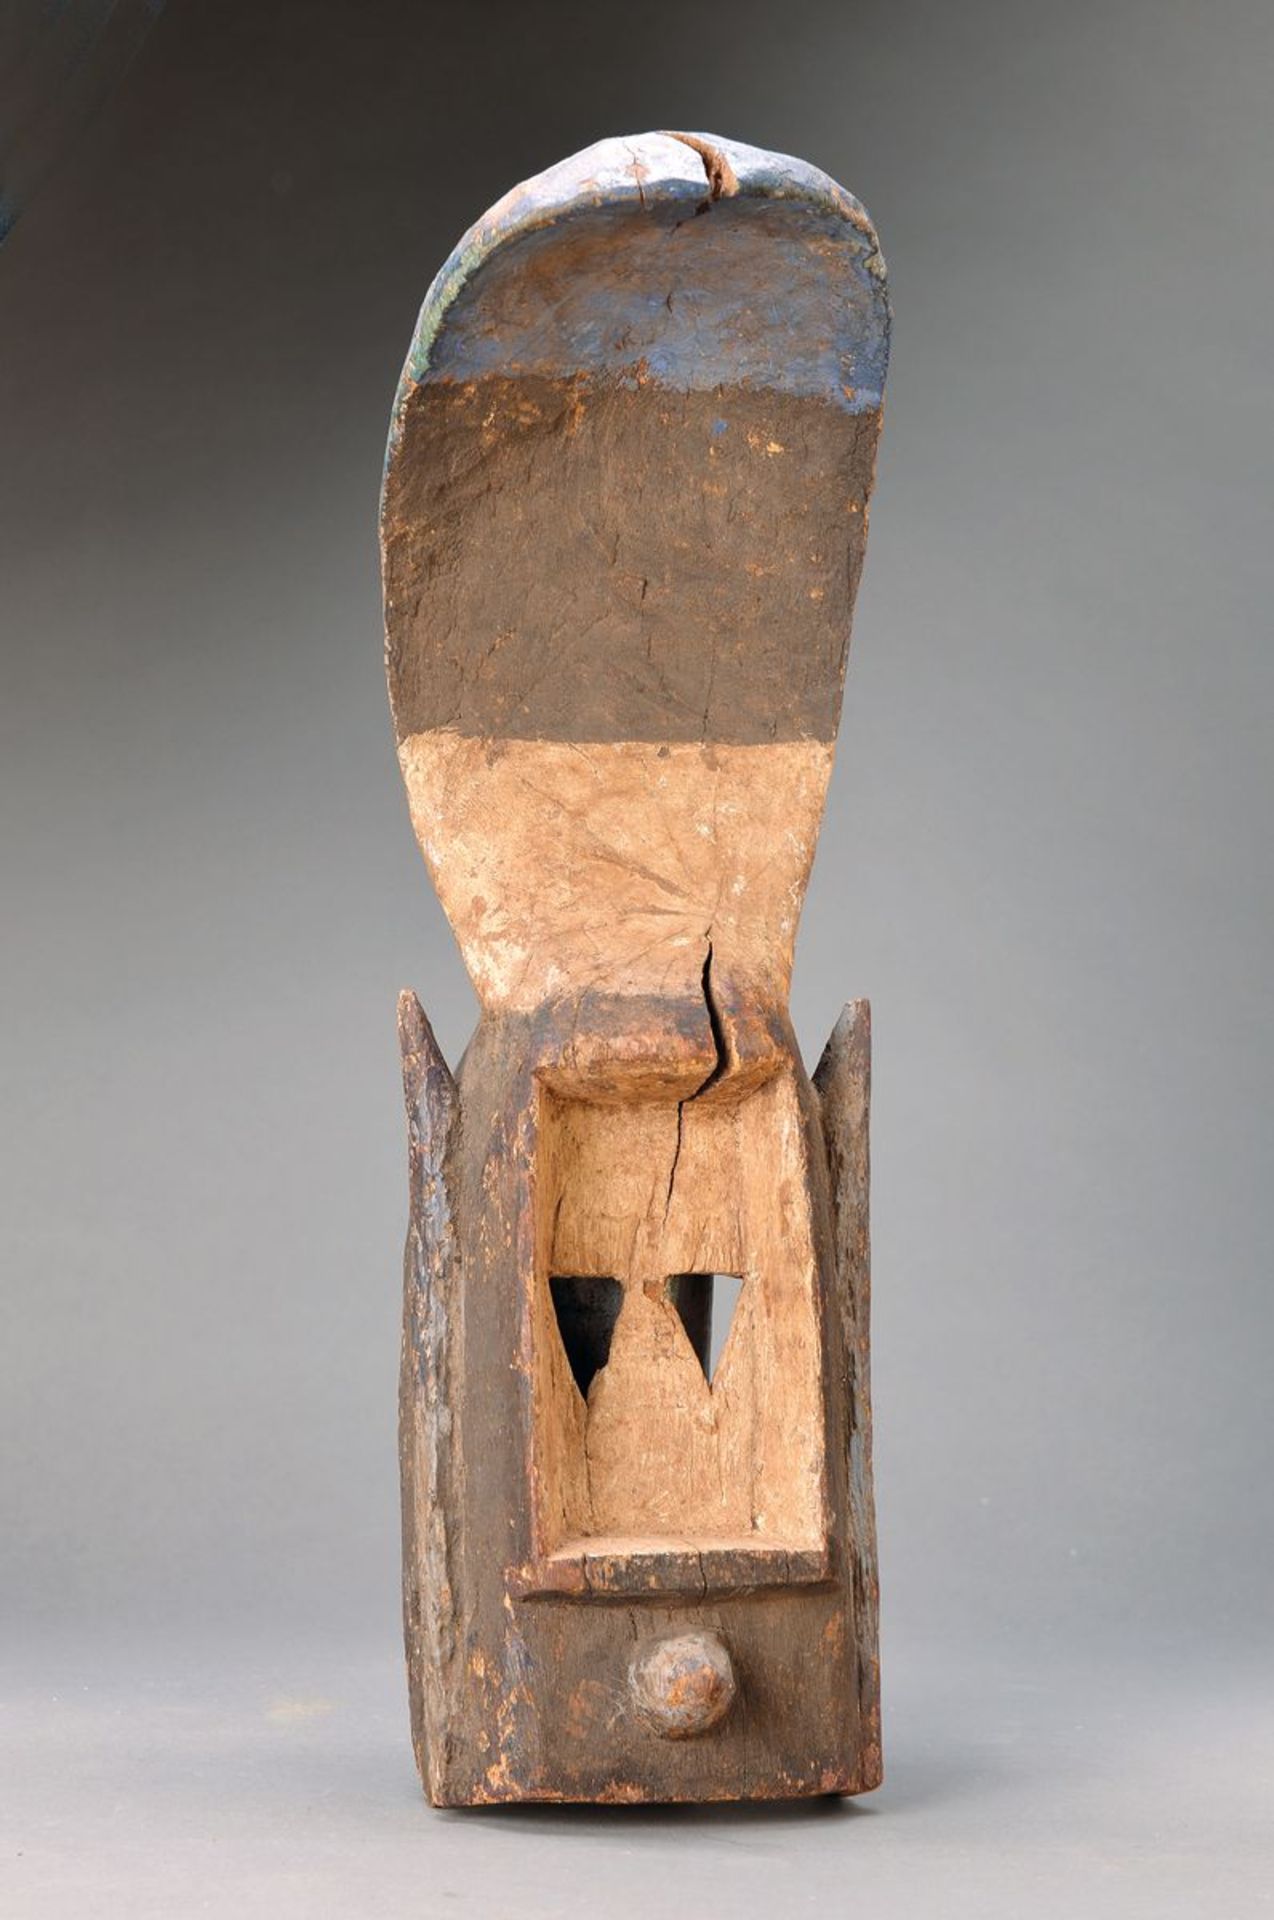 Maske mit Schaufel, wohl Kran, Liberia/ Elfenbeinküste, ca. 40-50 Jahre alt, Hartholz aus einem